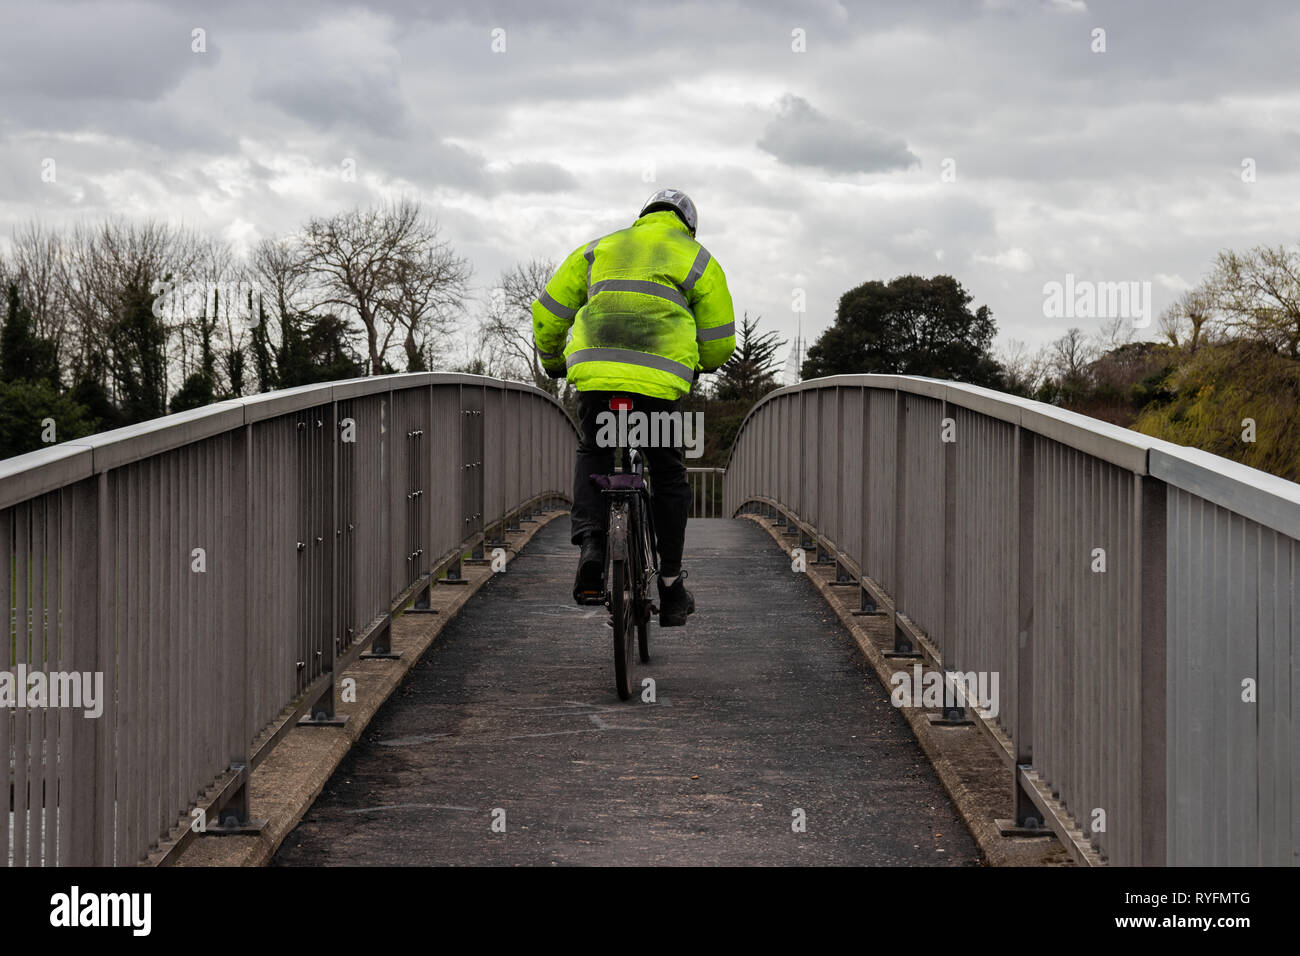 El hombre monta su bicicleta sobre un puente después del trabajo llevaba una chaqueta de alta visibilidad Foto de stock